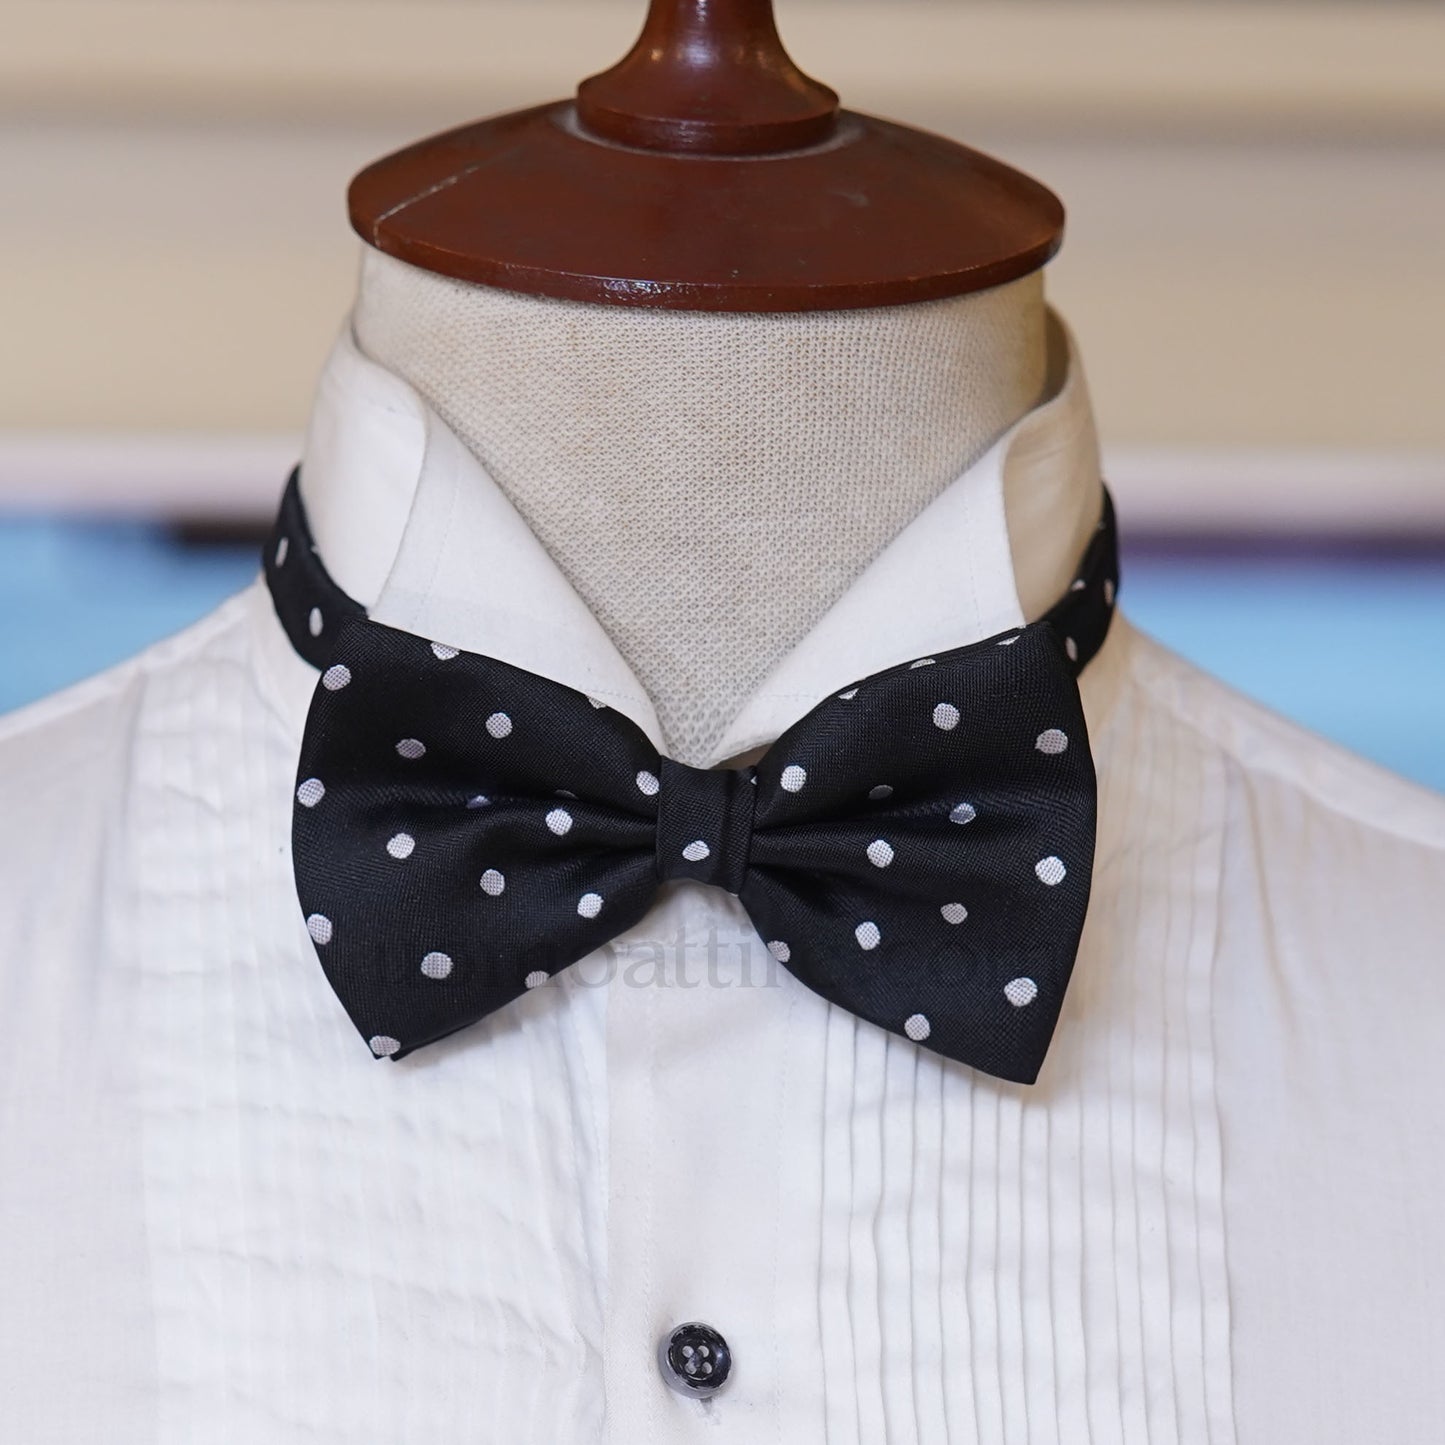 black polka dot bow tie, black bow tie